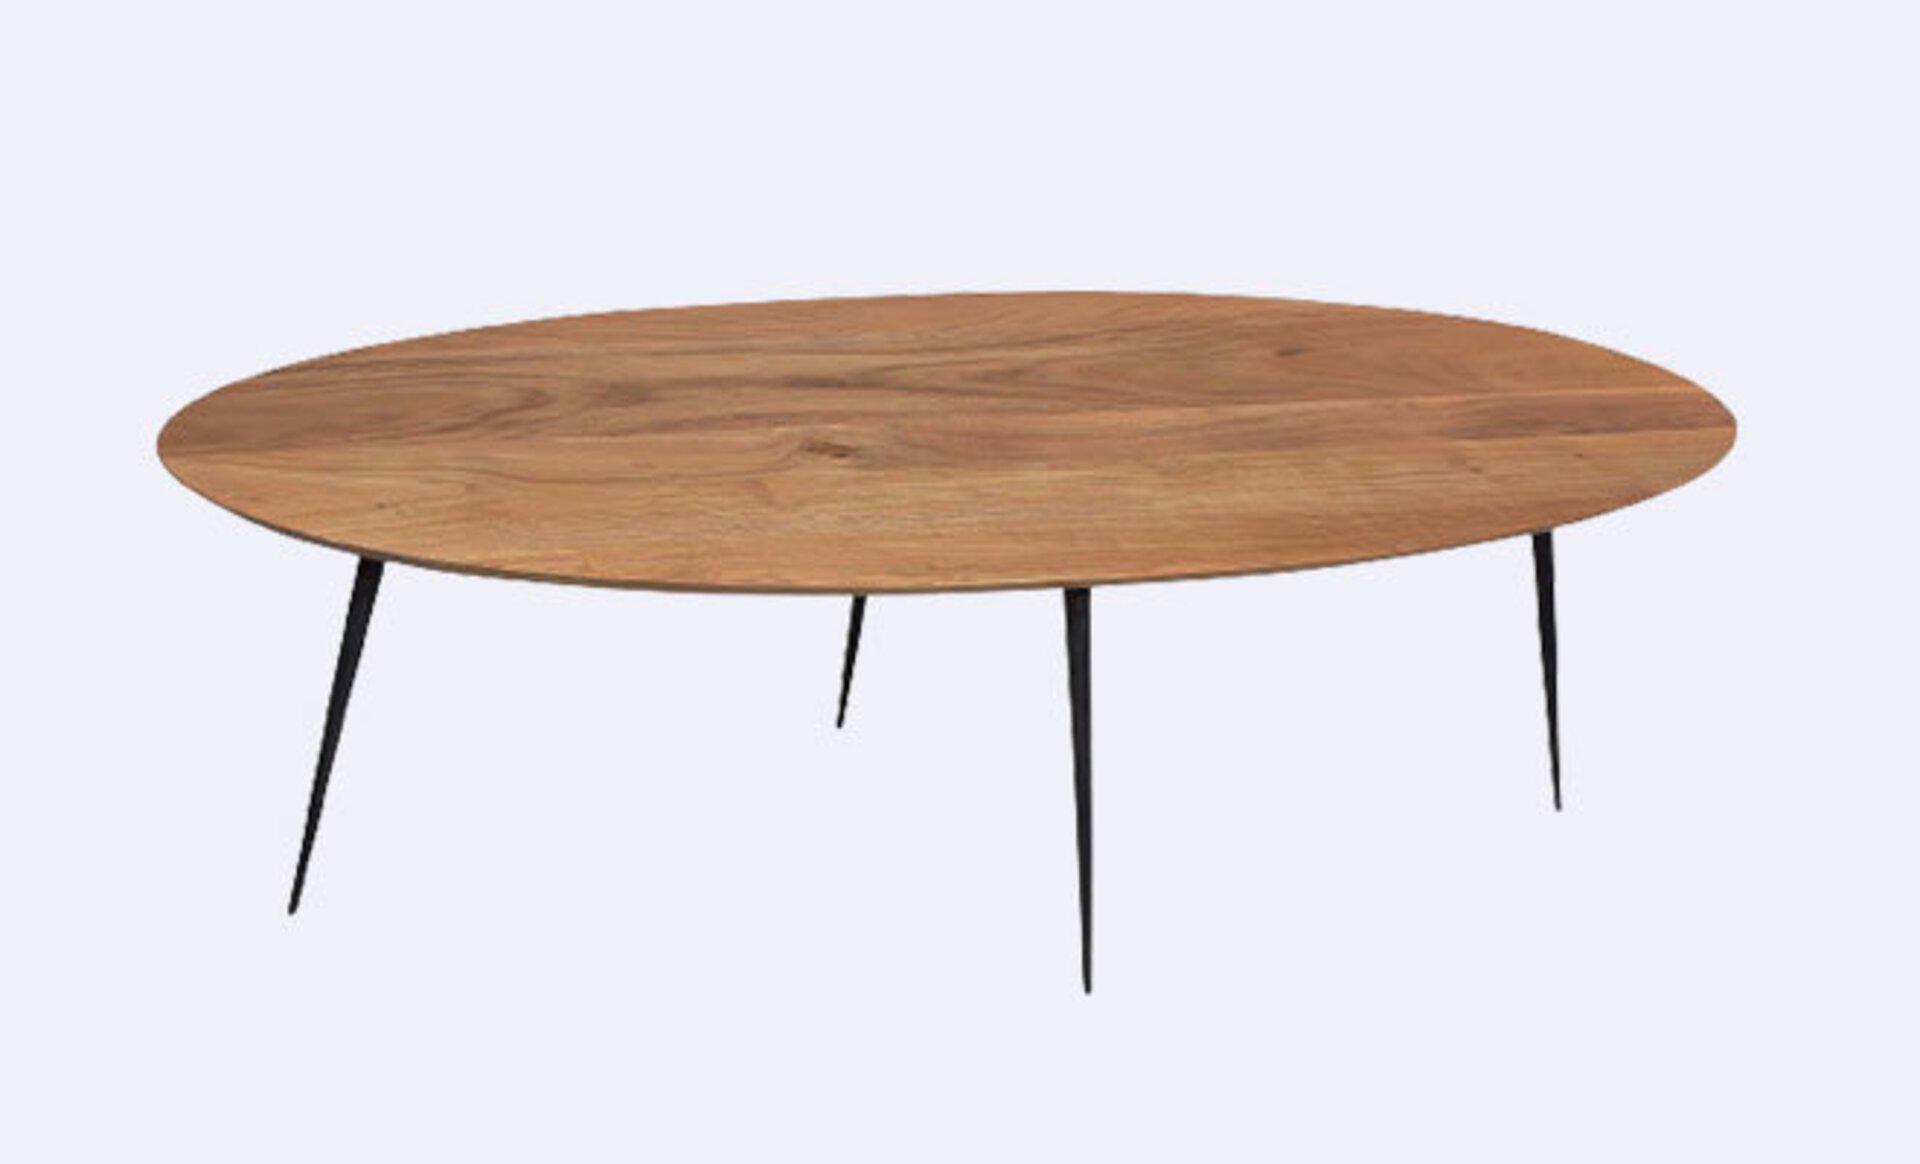 Ein freistehender Tisch von Möbel Inhofer